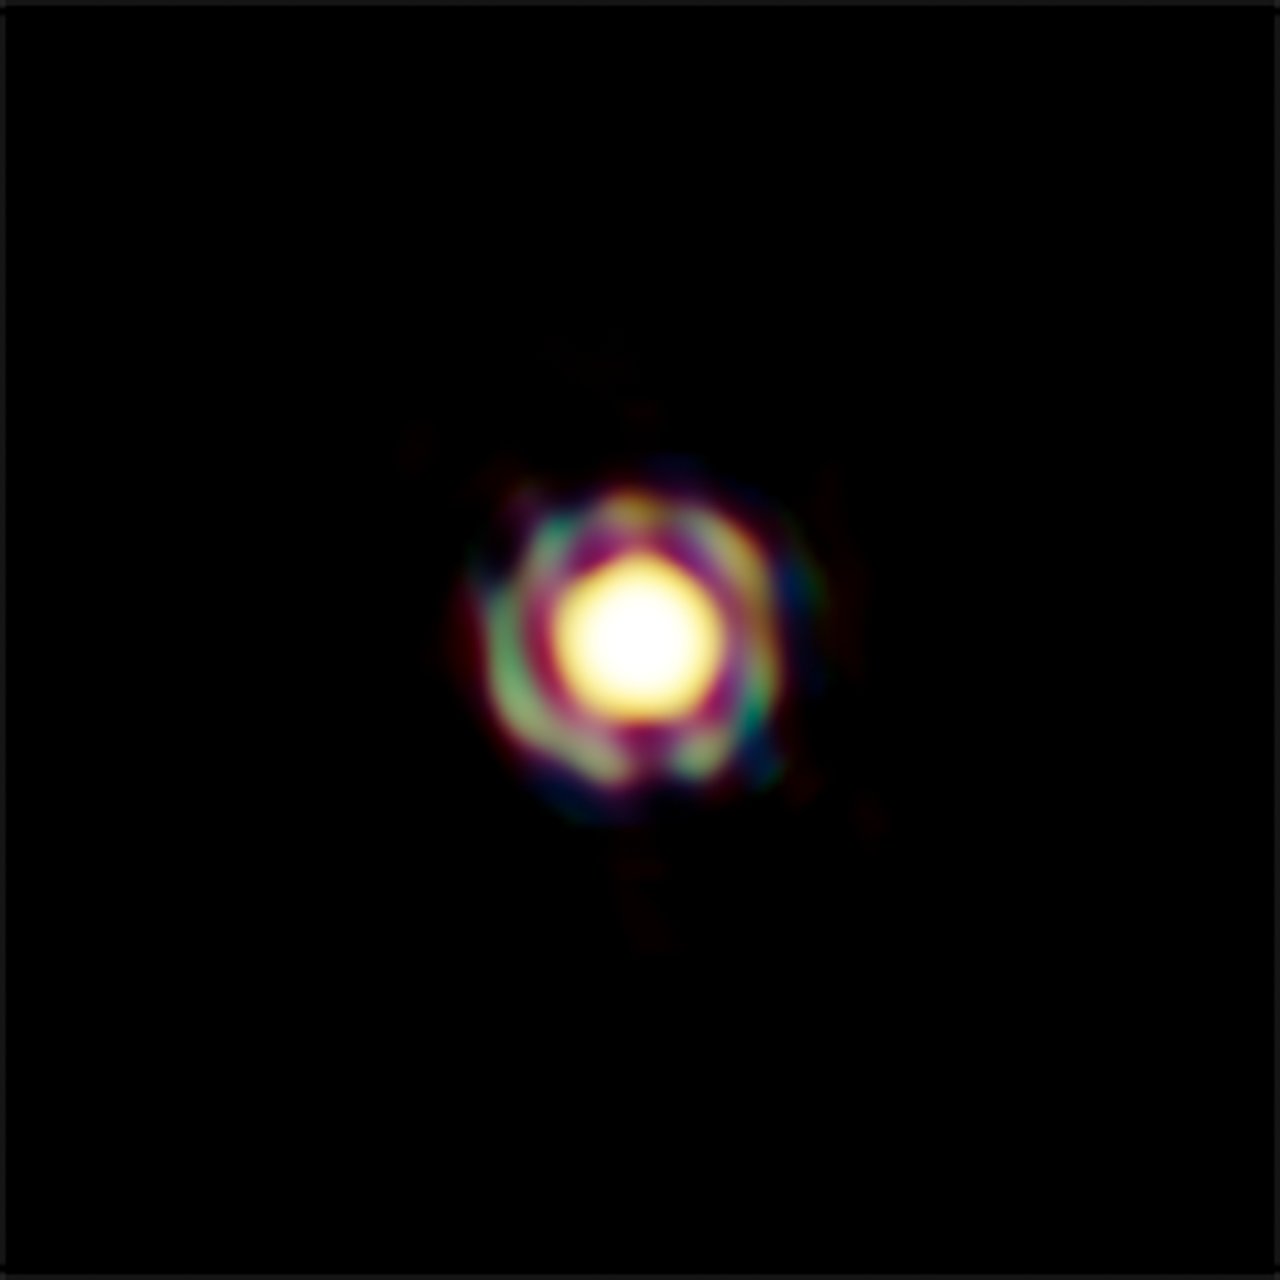 L’étoile T Leporis vue avec le VLTI